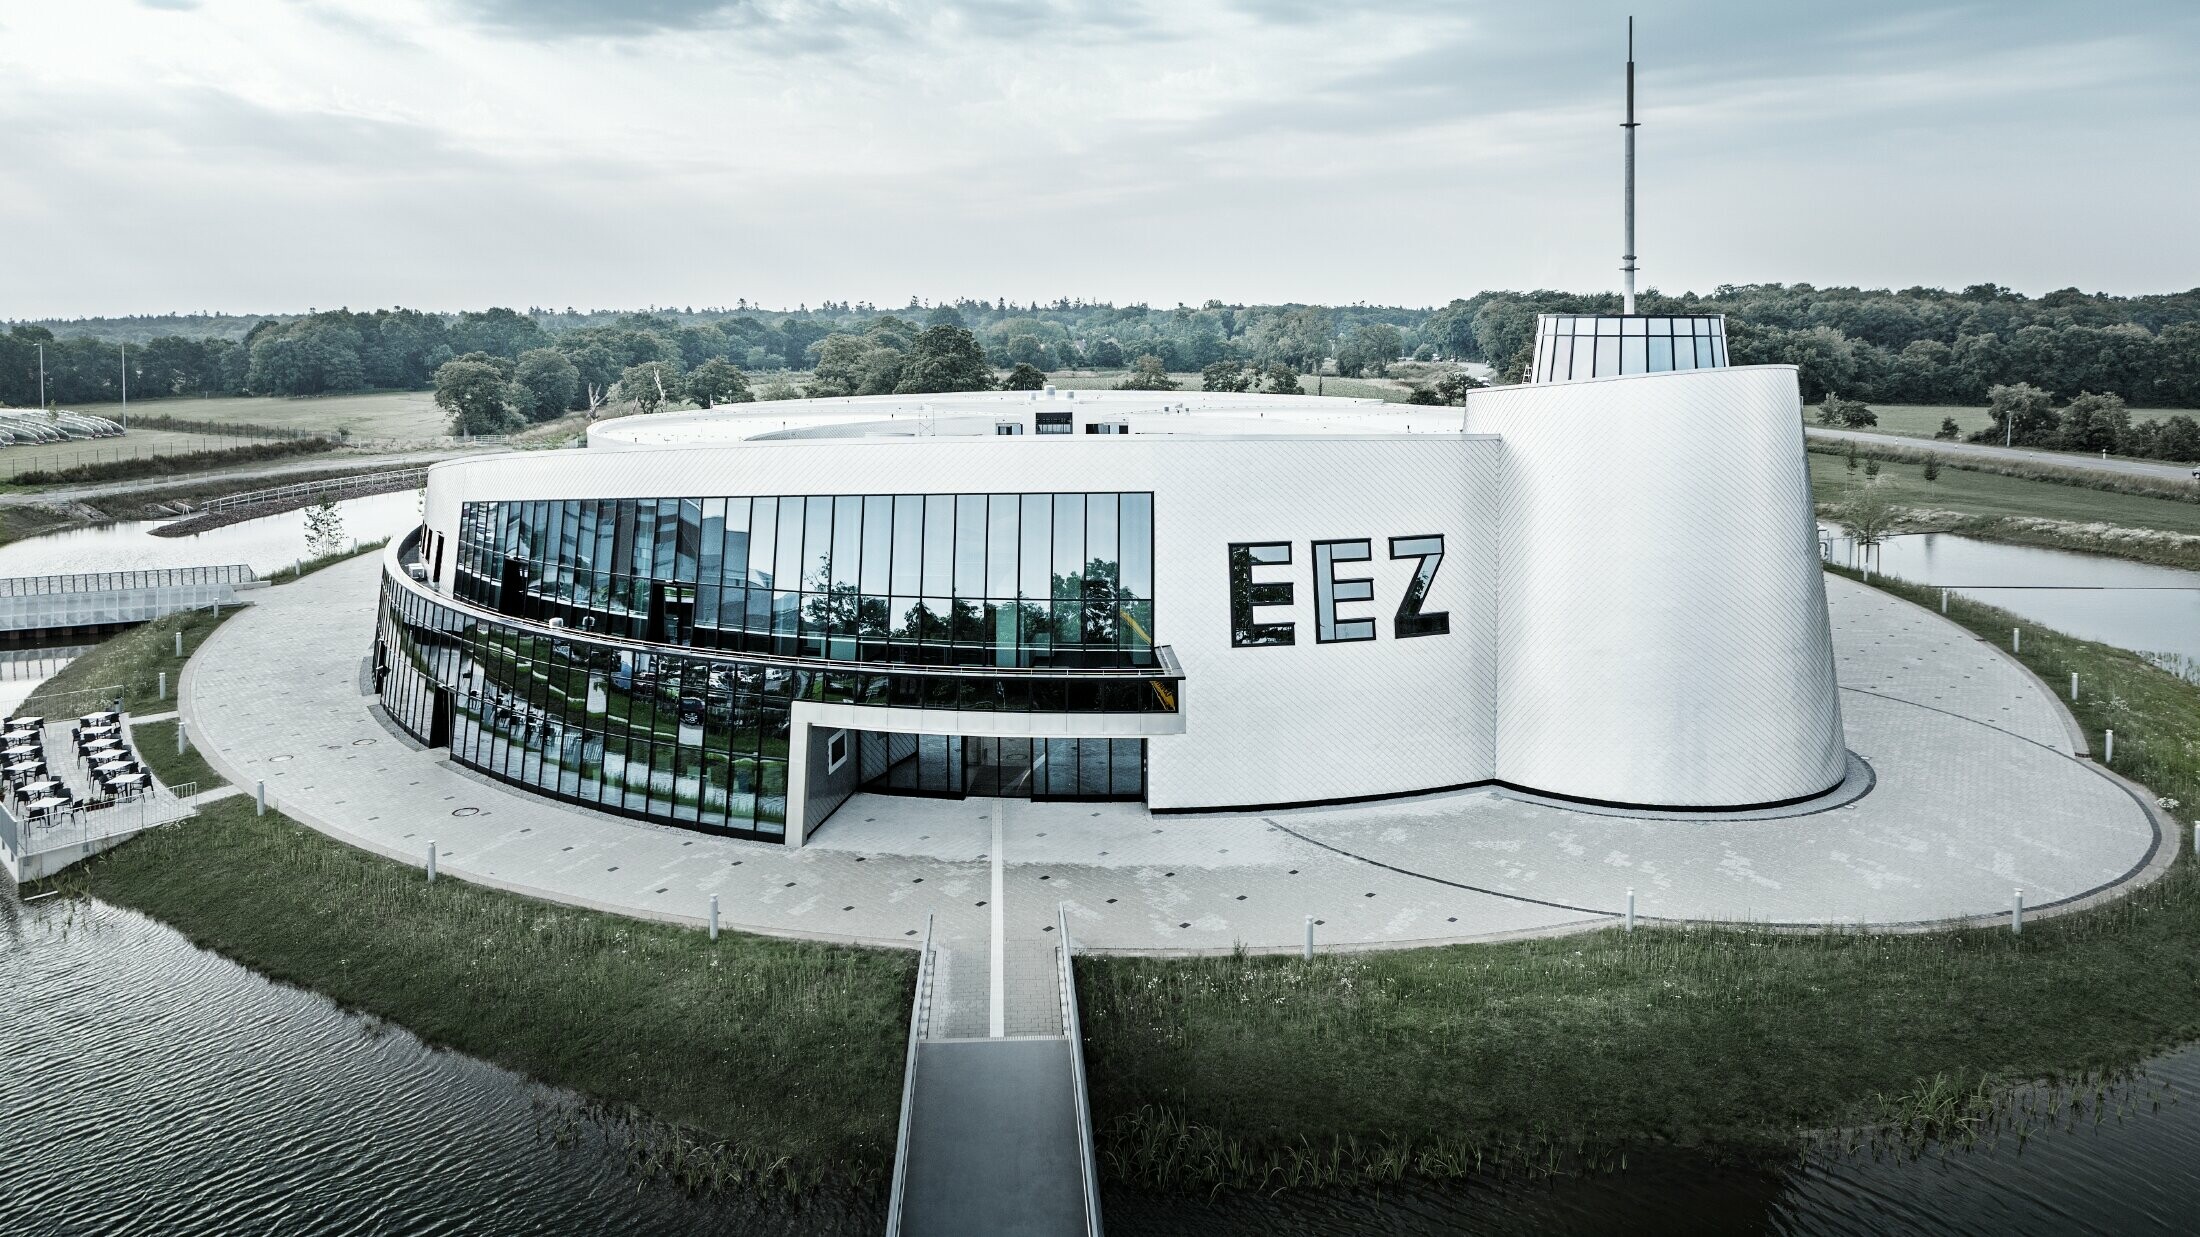 Brojni zaobljeni dijelovi zgrade Centra za energiju i zabavu u Aurichu (Energie-Erlebnis-Zentrum Aurich, skraćeno EEZ) obloženi su PREFA zidnim rombom 20 × 20 u natur boji.